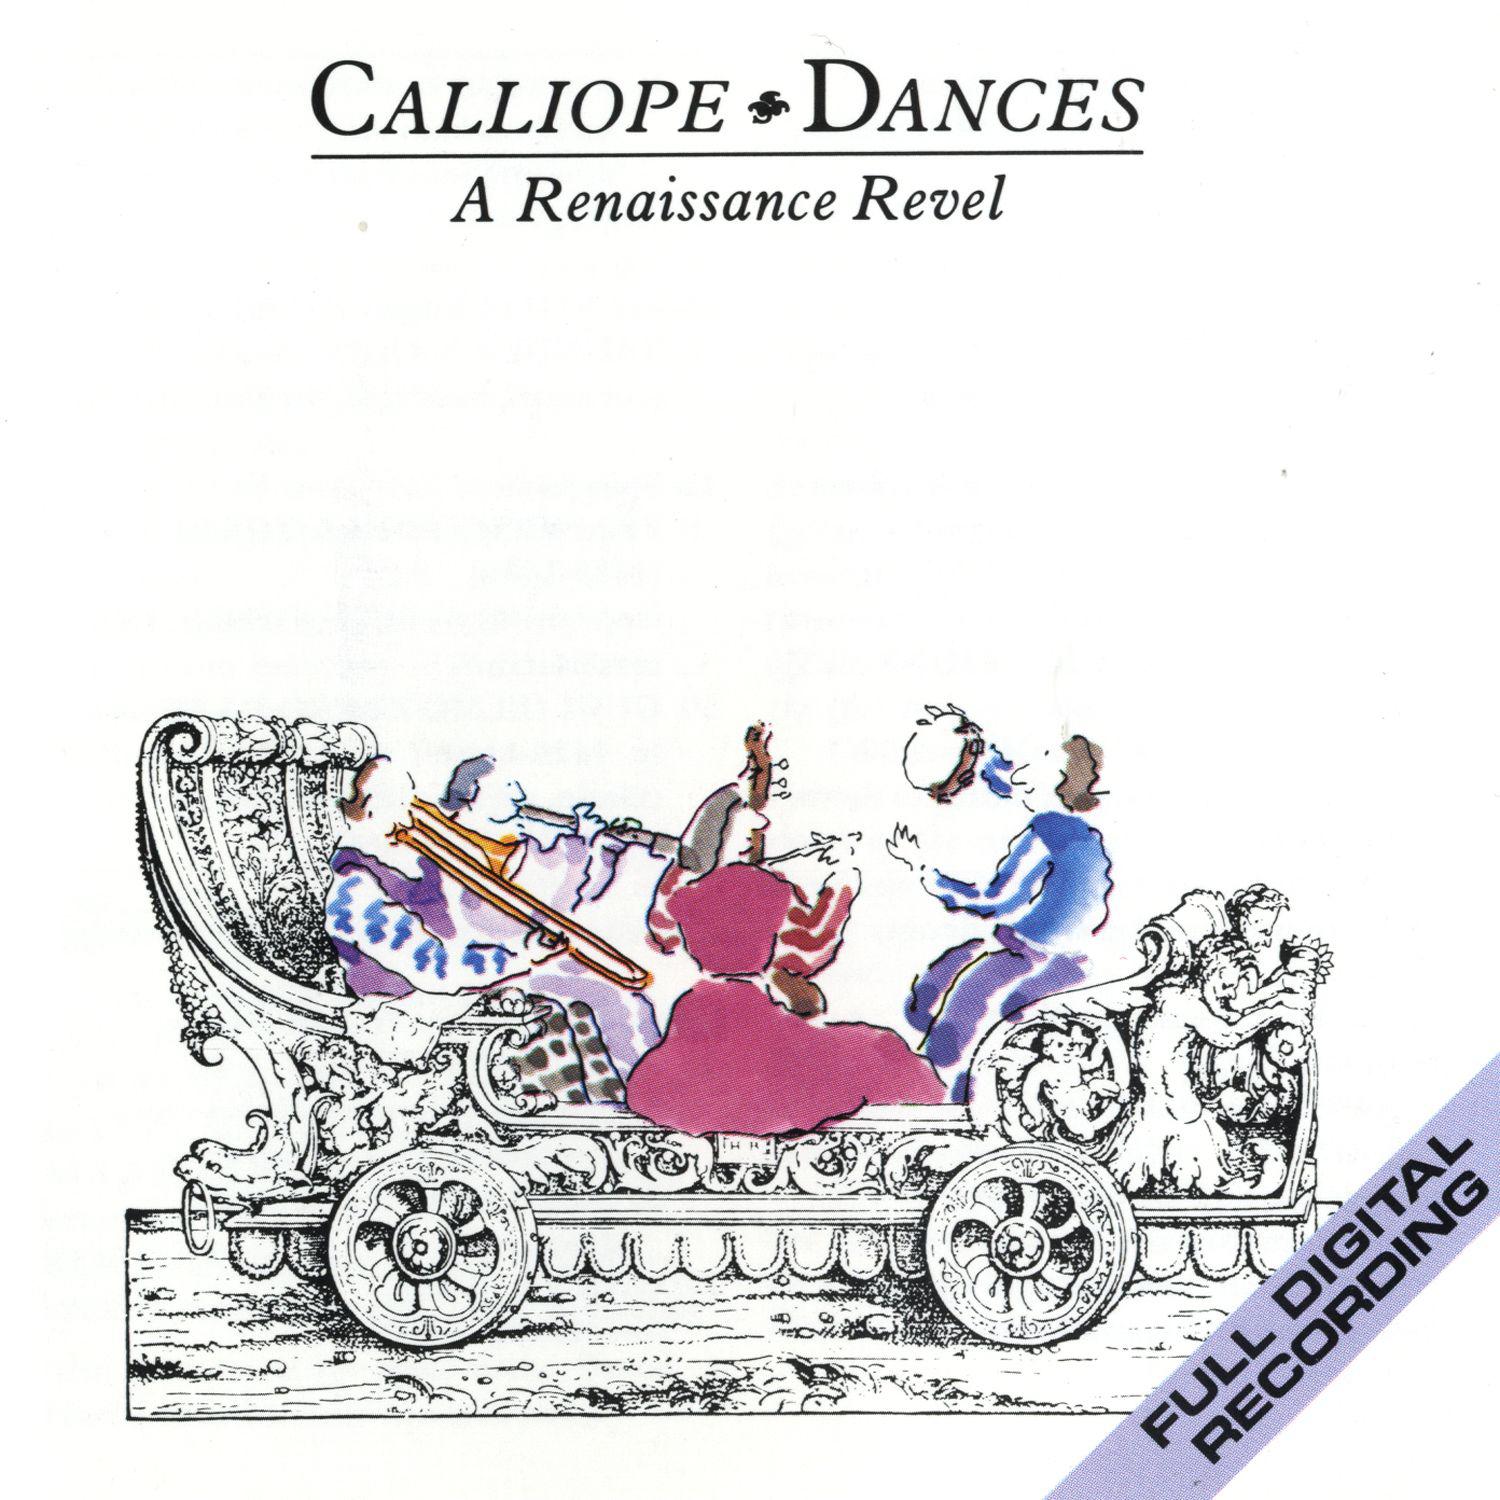 Sixteenth Century French Dances: Basse Dance "Au Pres De Vous"